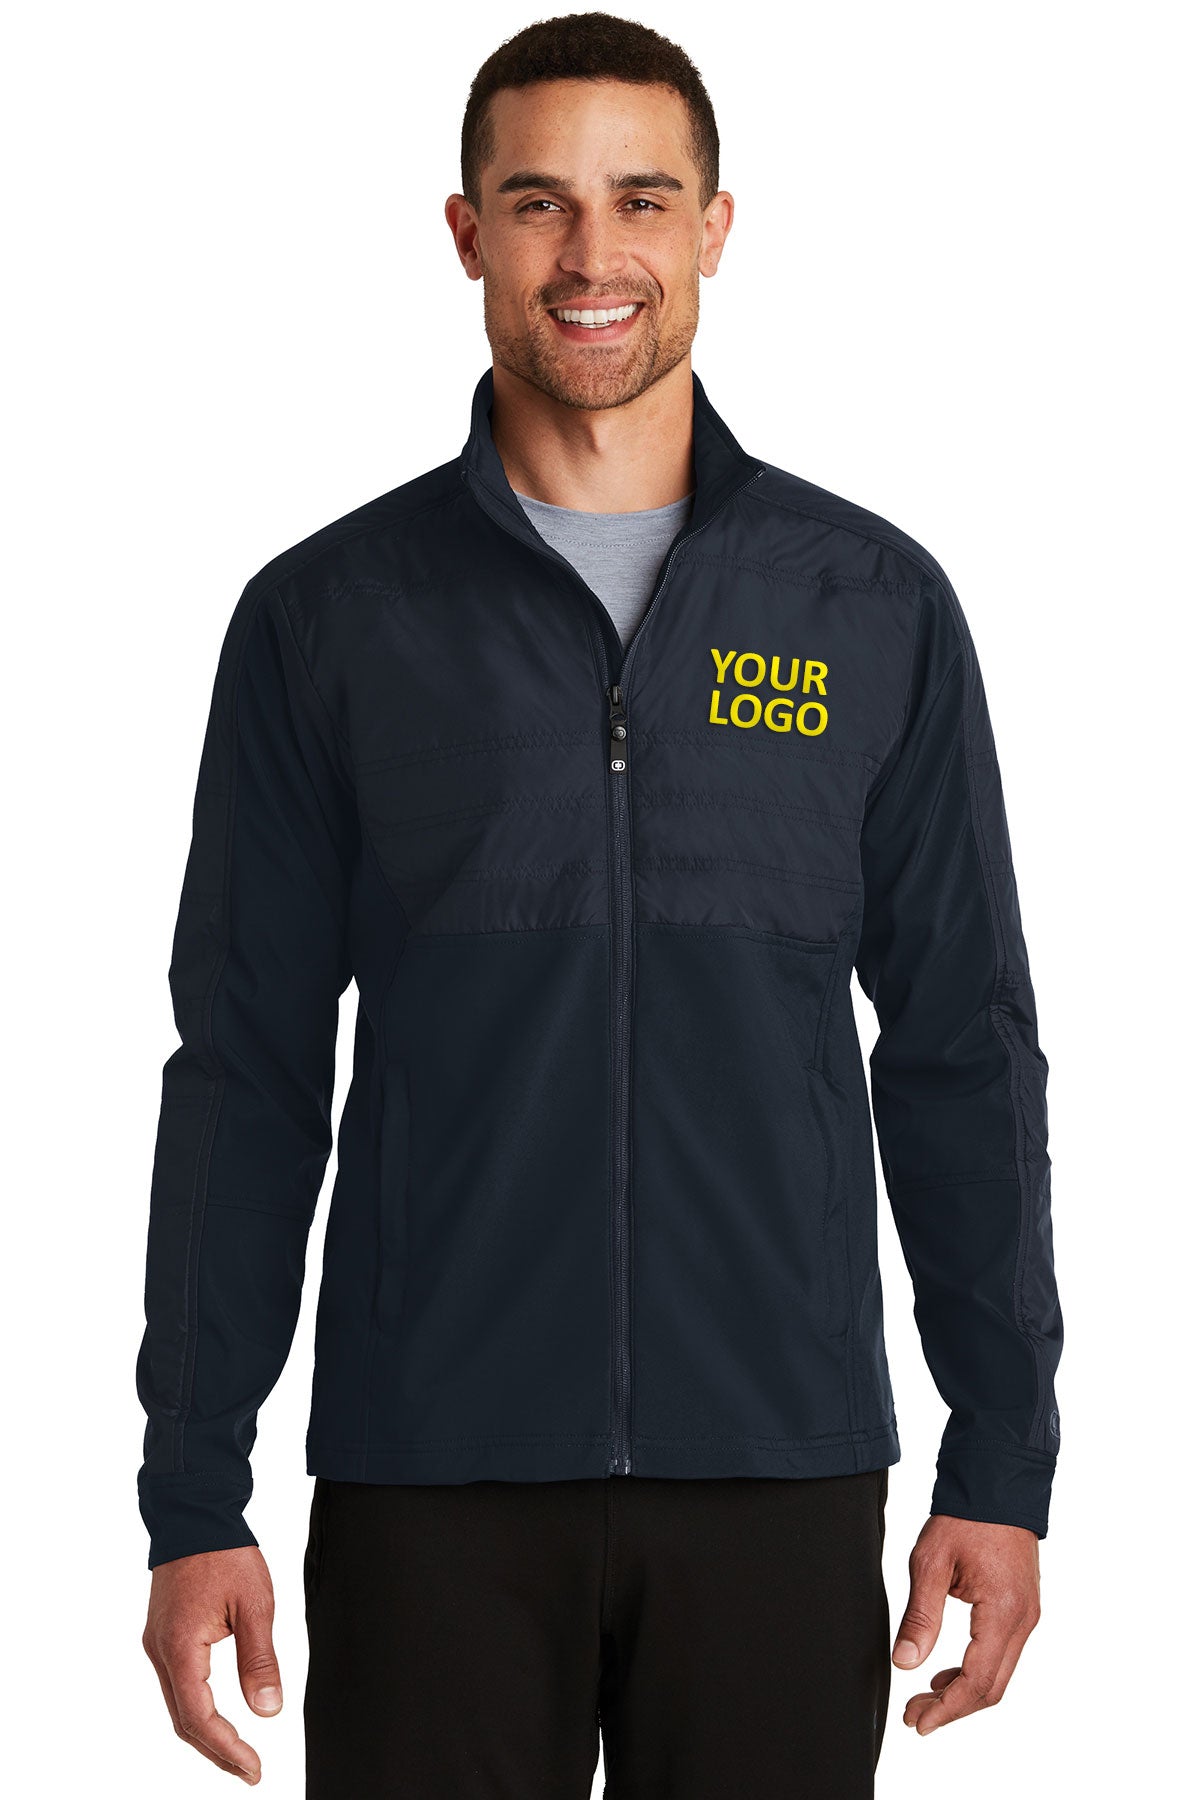 OGIO Endurance Propel Navy OE722 company jackets with logo